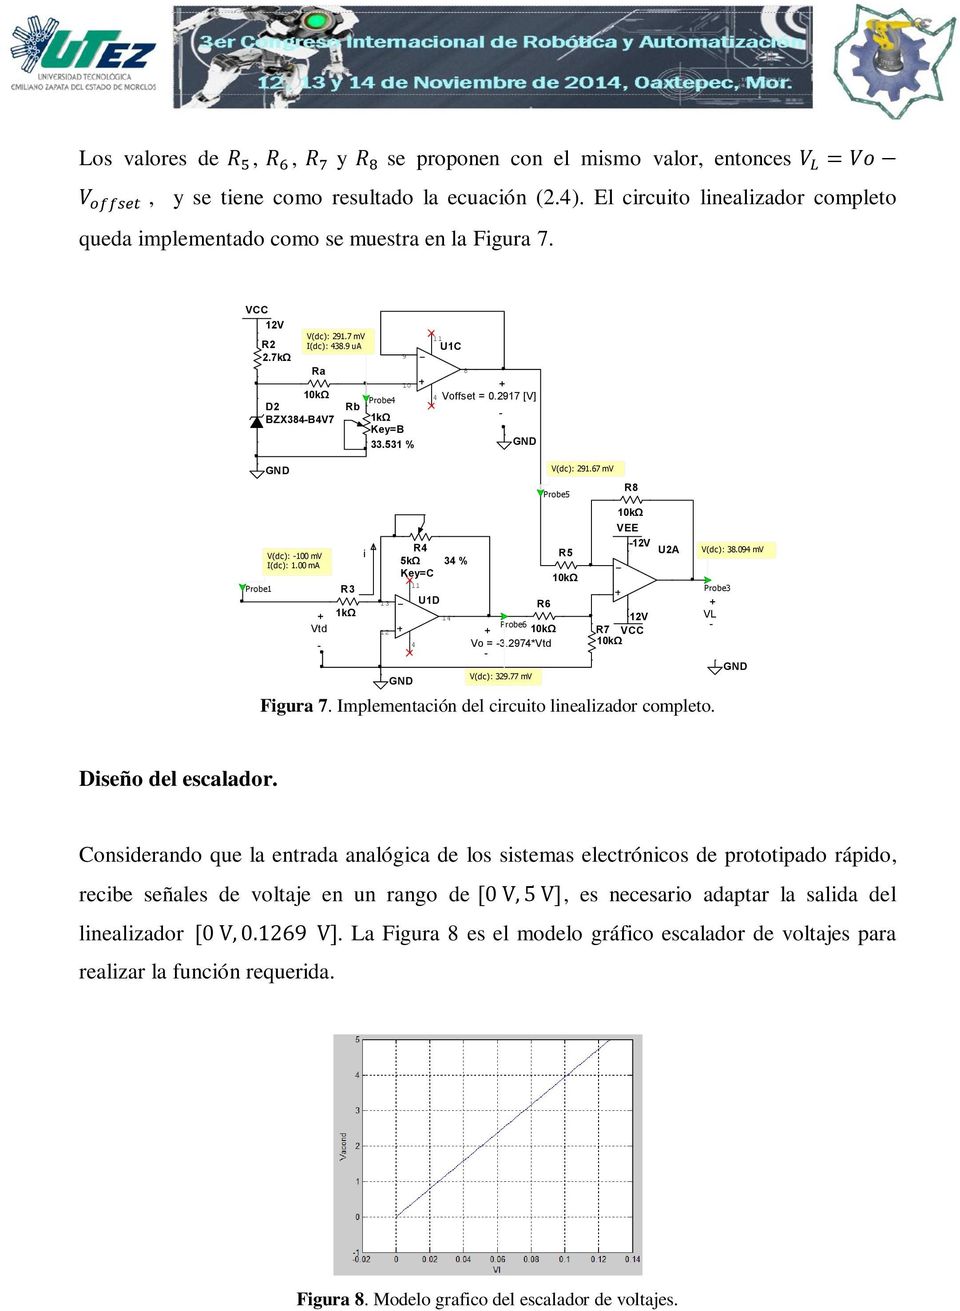 00 ma Vtd R3 1kΩ i 13 12 R4 5kΩ Key=C 11 4 U1D 34 % 14 Probe6 Vo = 3.2974*Vtd V(dc): 329.77 mv VEE R7 VCC Figura 7. Implementación del circuito linealizador completo. R6 V(dc): 291.